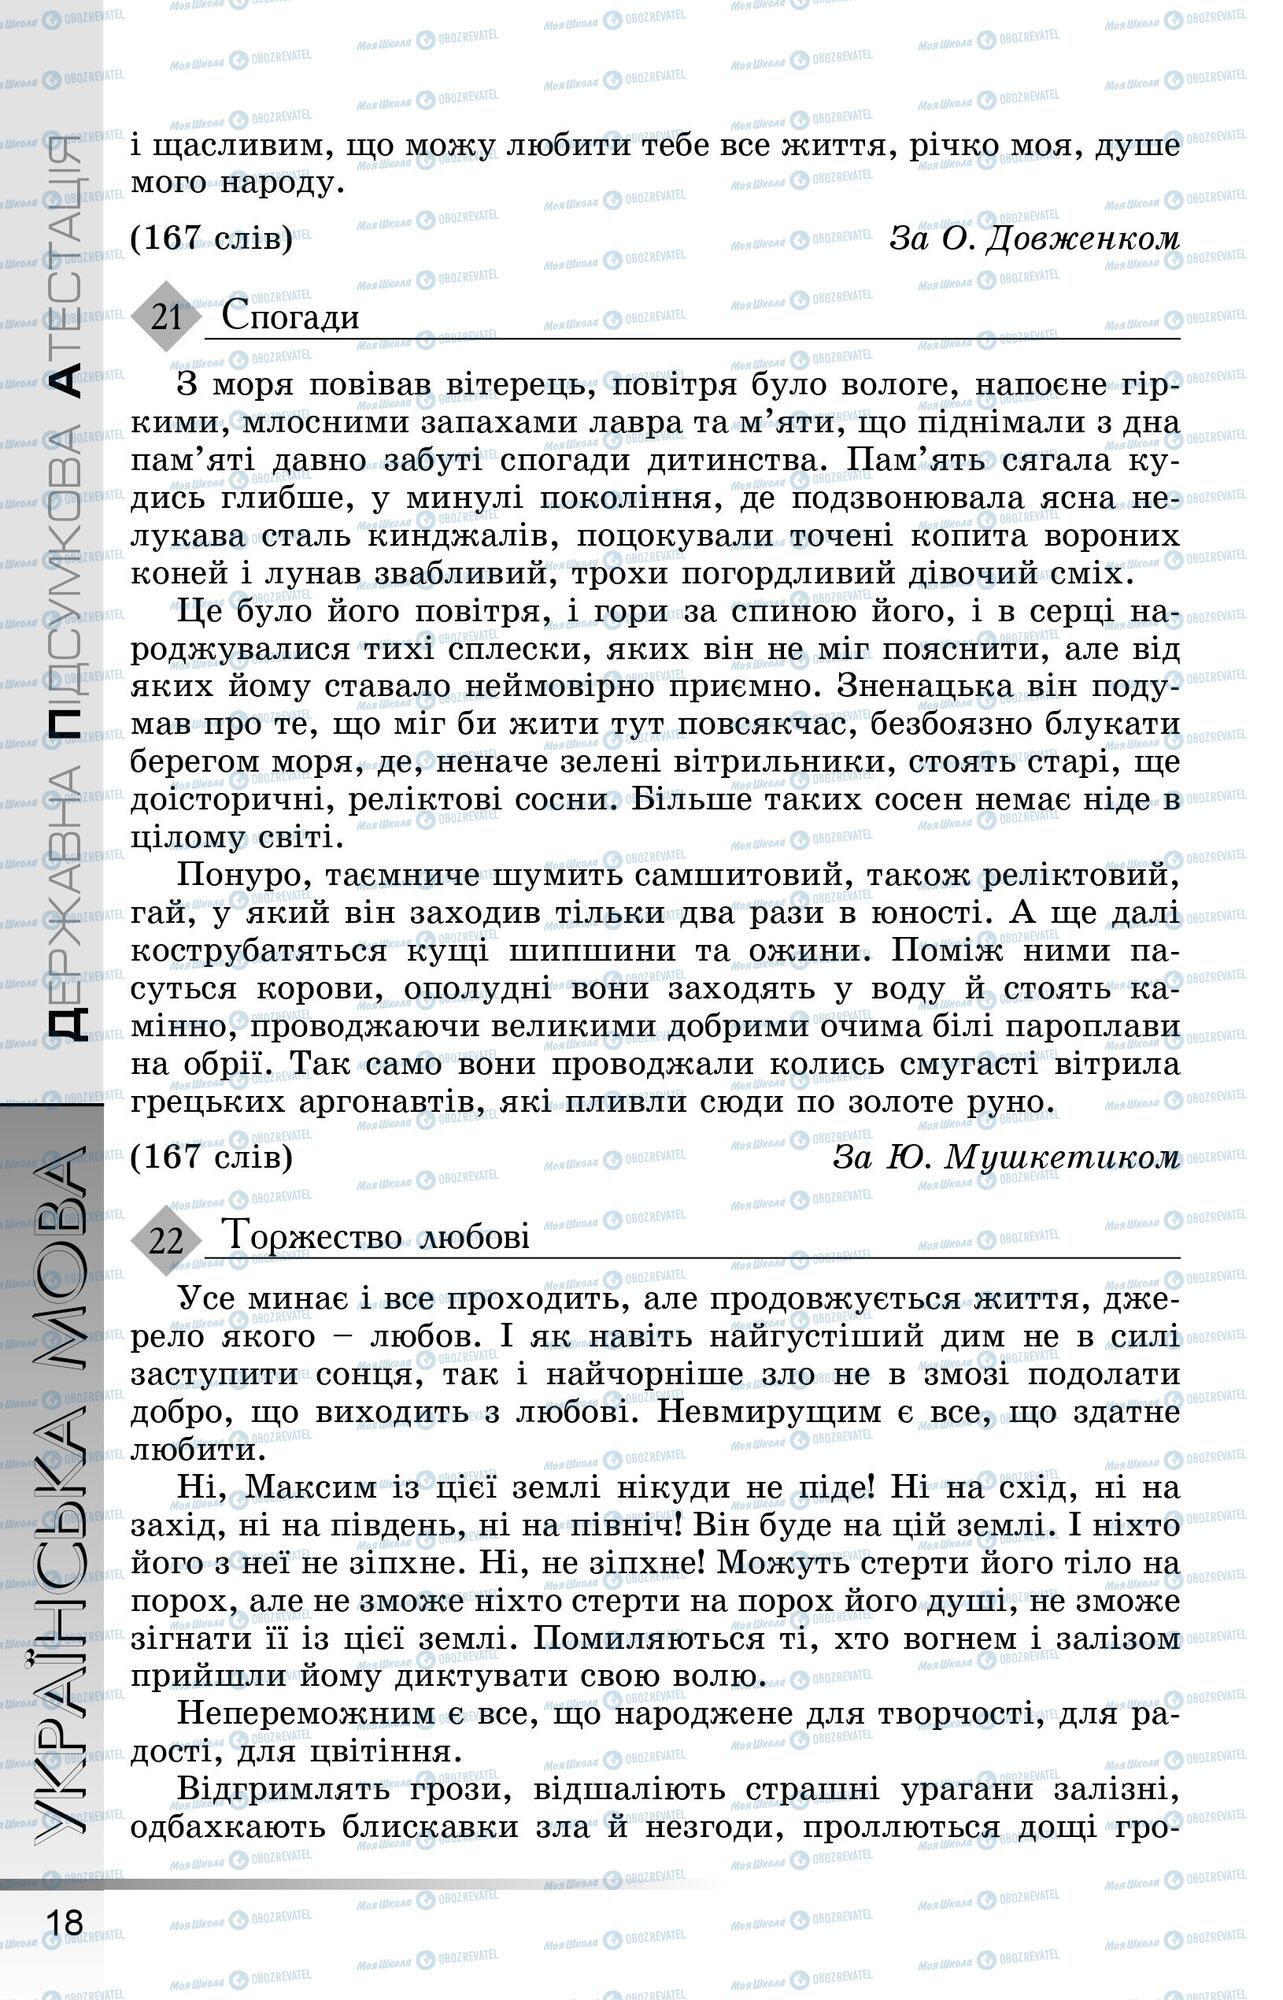 ДПА Укр мова 9 класс страница 0019